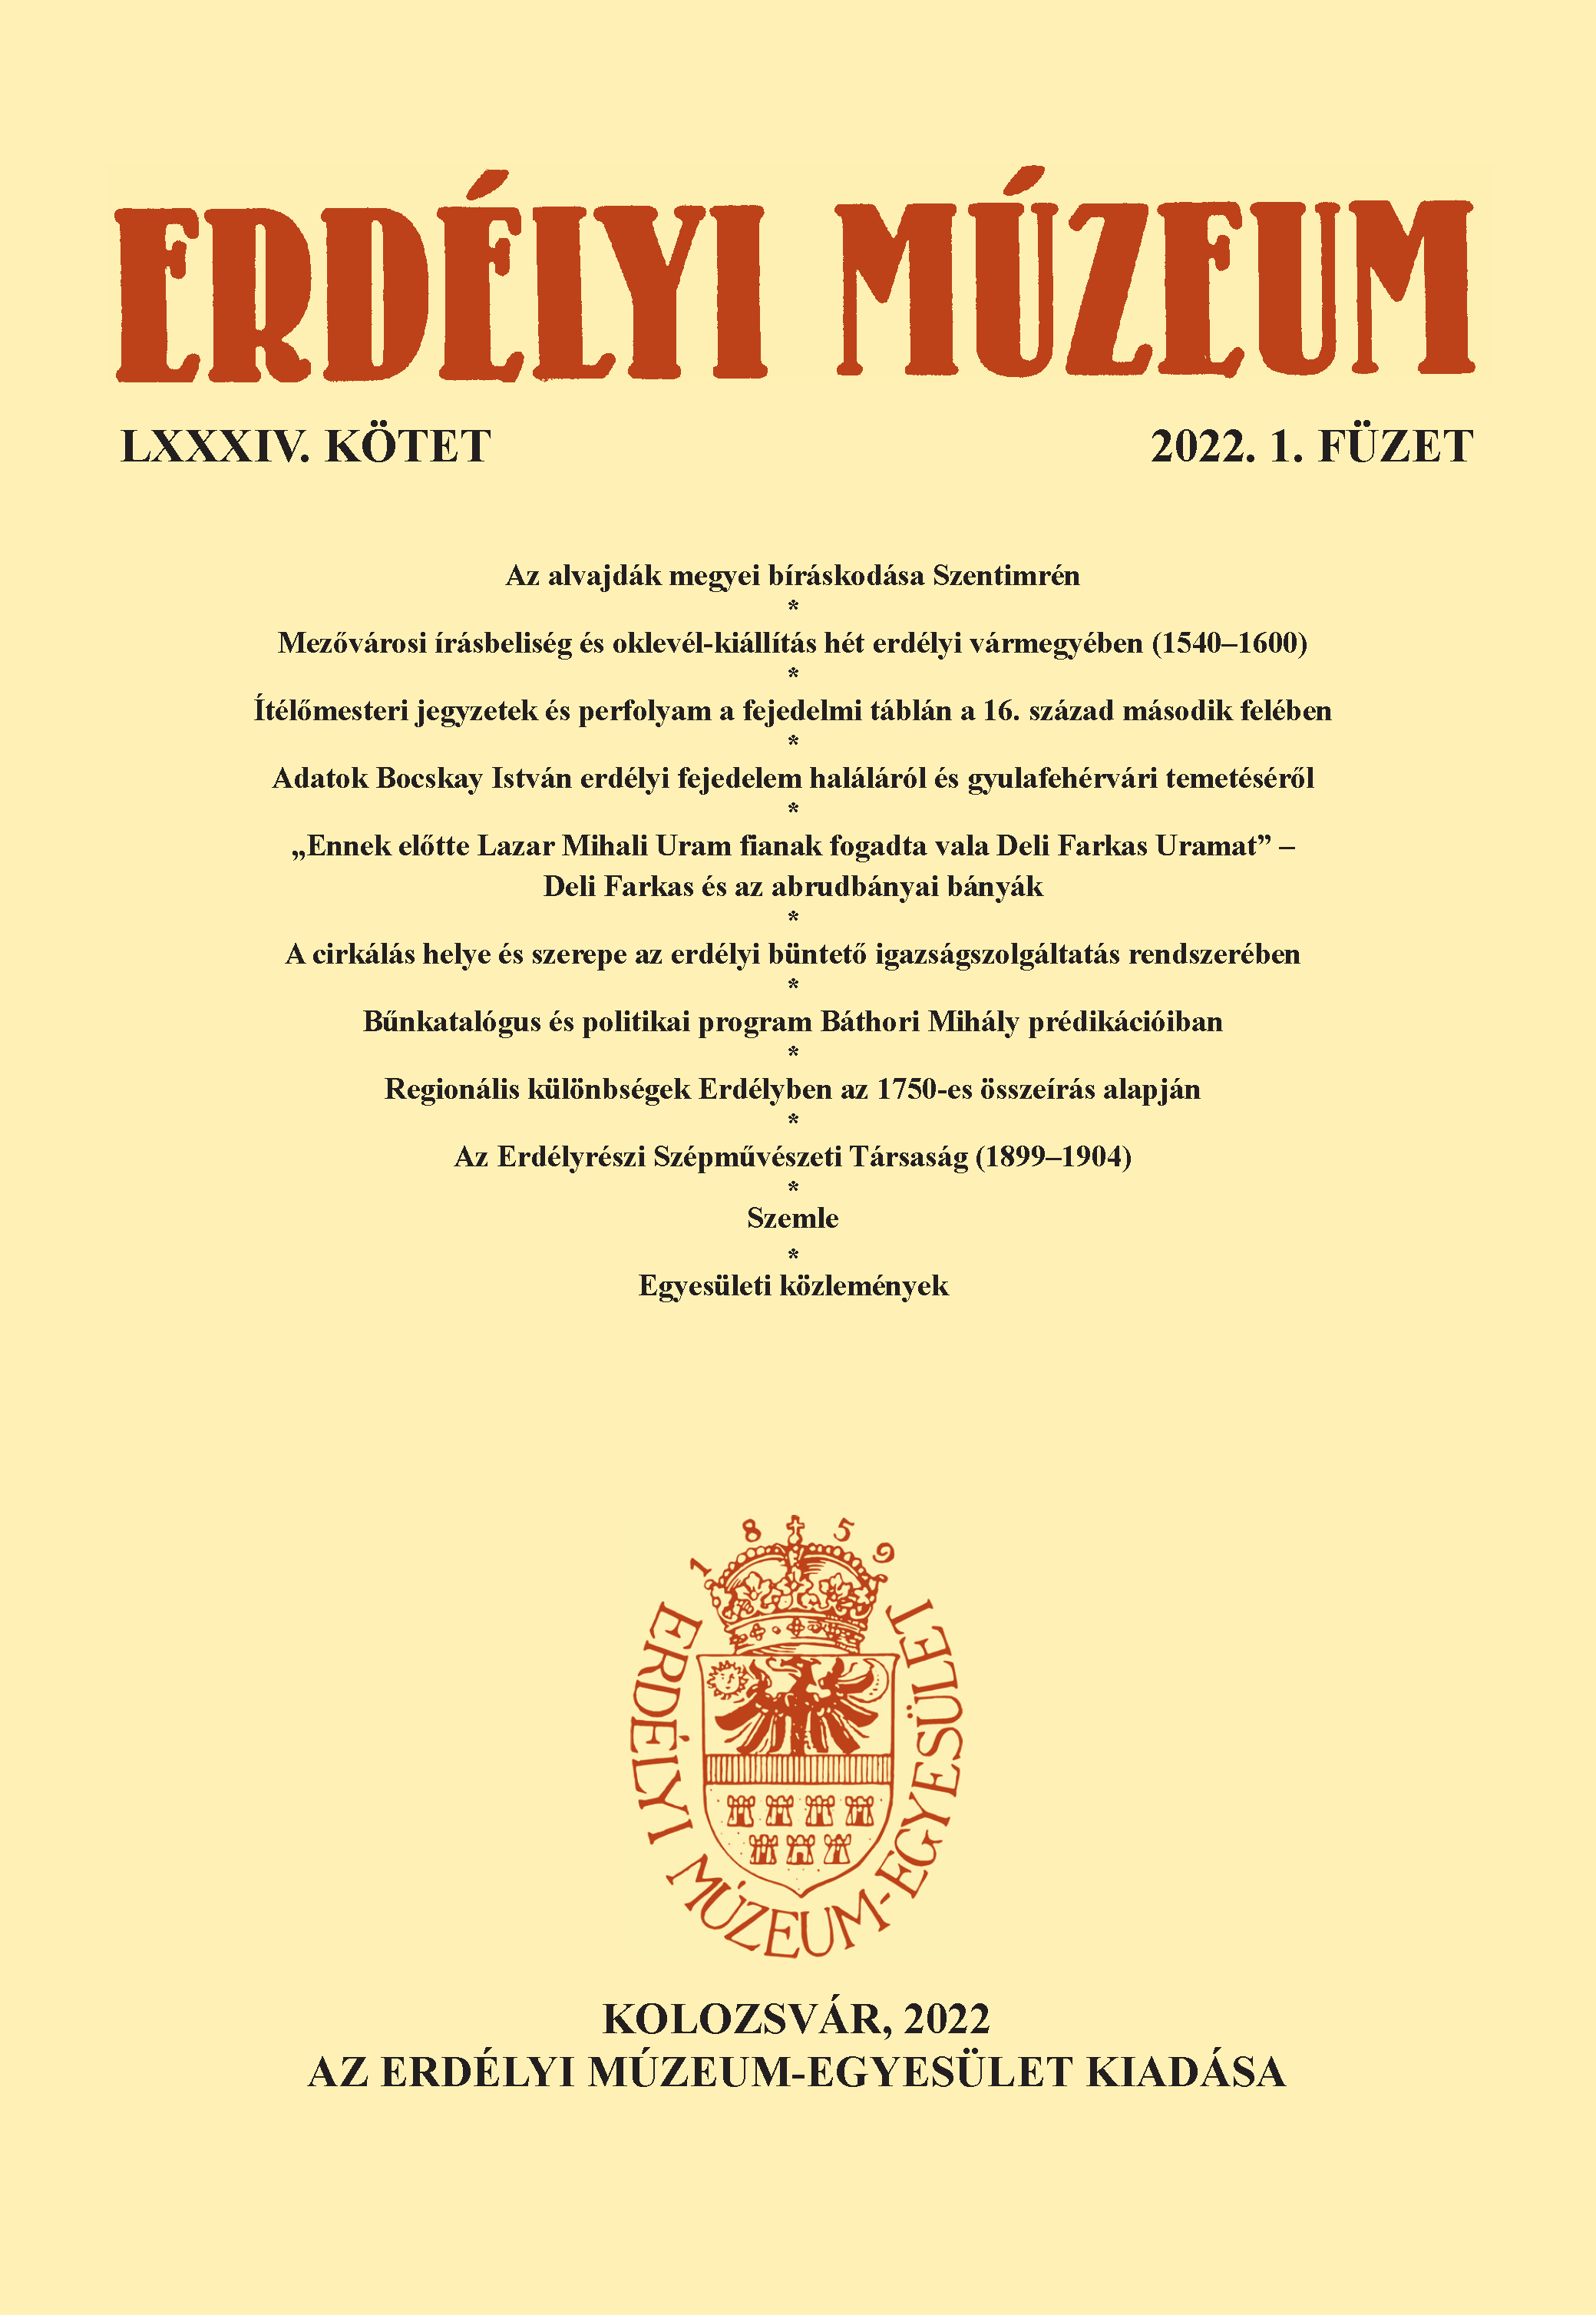 The Erdélyrészi Szépművészeti Társaság (Transylvanian Fine Arts Society) (1899–1904) Cover Image